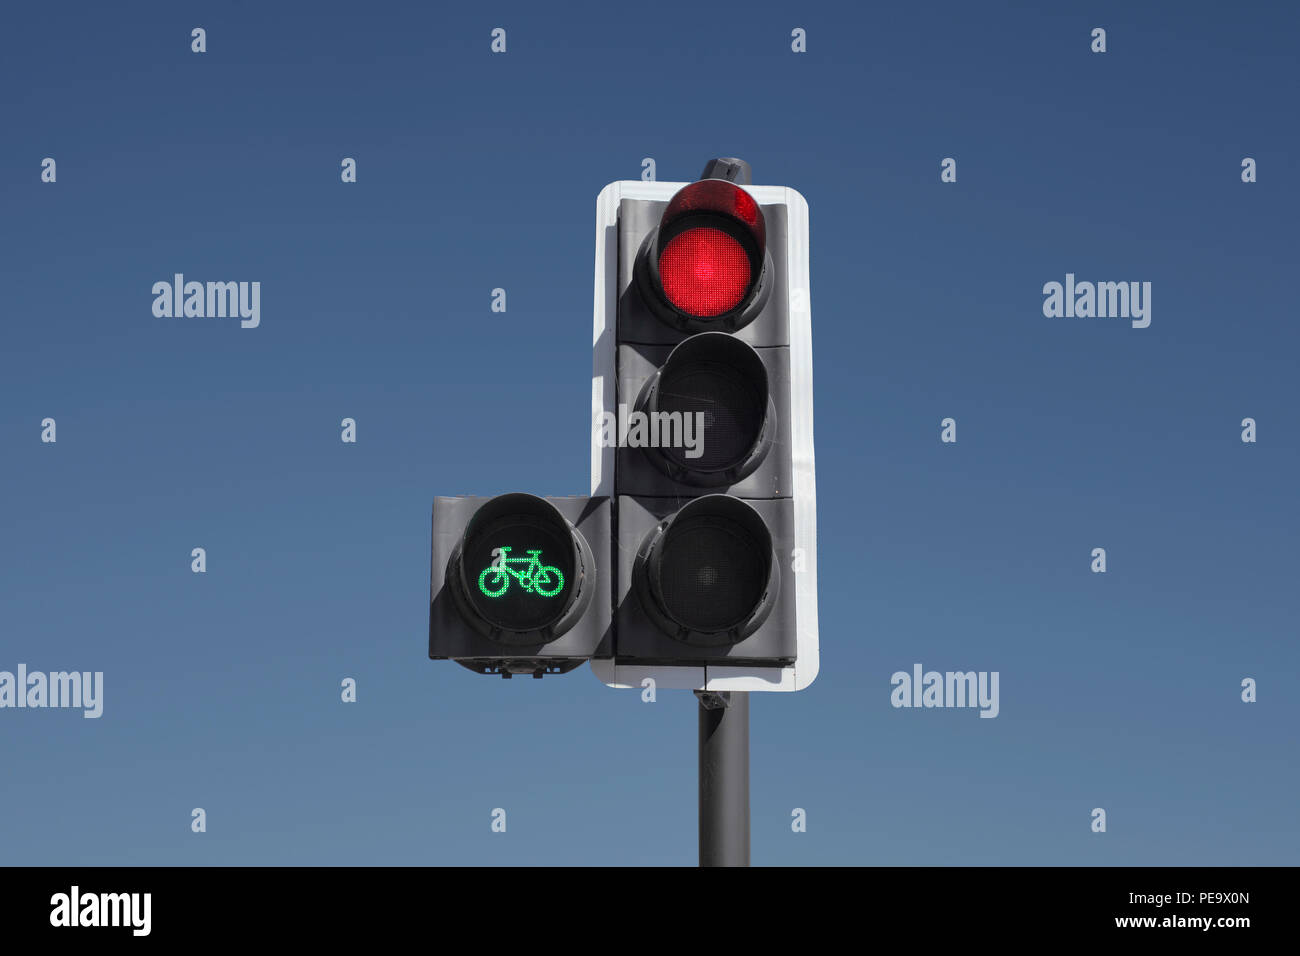 Ein Zyklus Priorität Ampel. Das grüne Licht gibt Radfahrern einen Vorsprung, so dass Sie die Kreuzung vor dem restlichen Verkehr zu überqueren. Stockfoto